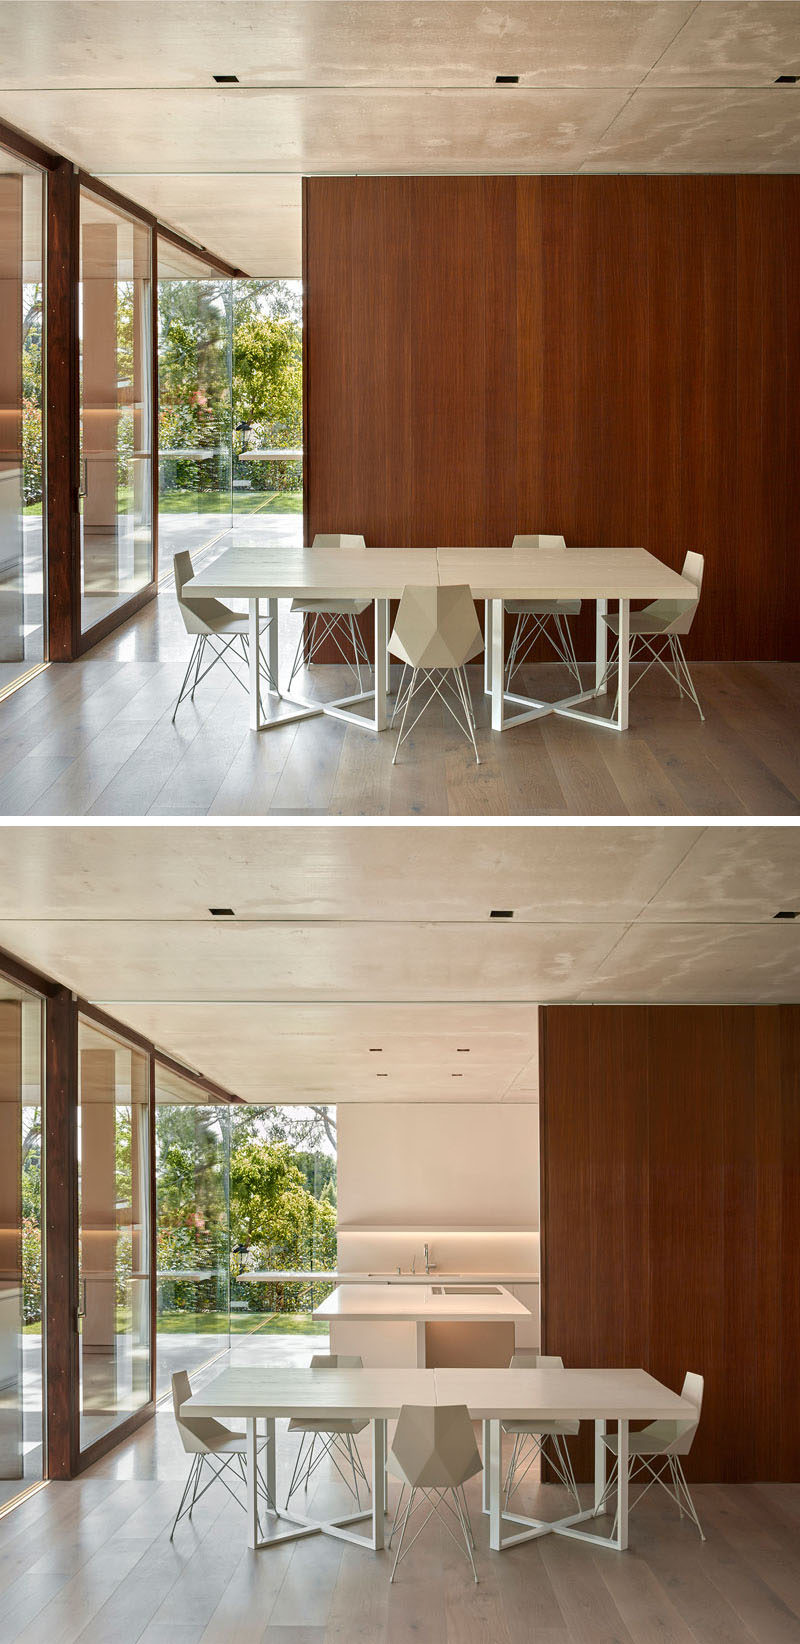 Эта столовая имеет минималистичный дизайн с белым столом и стульями, а деревянная стена раздвигается, открывая кухню позади нее.